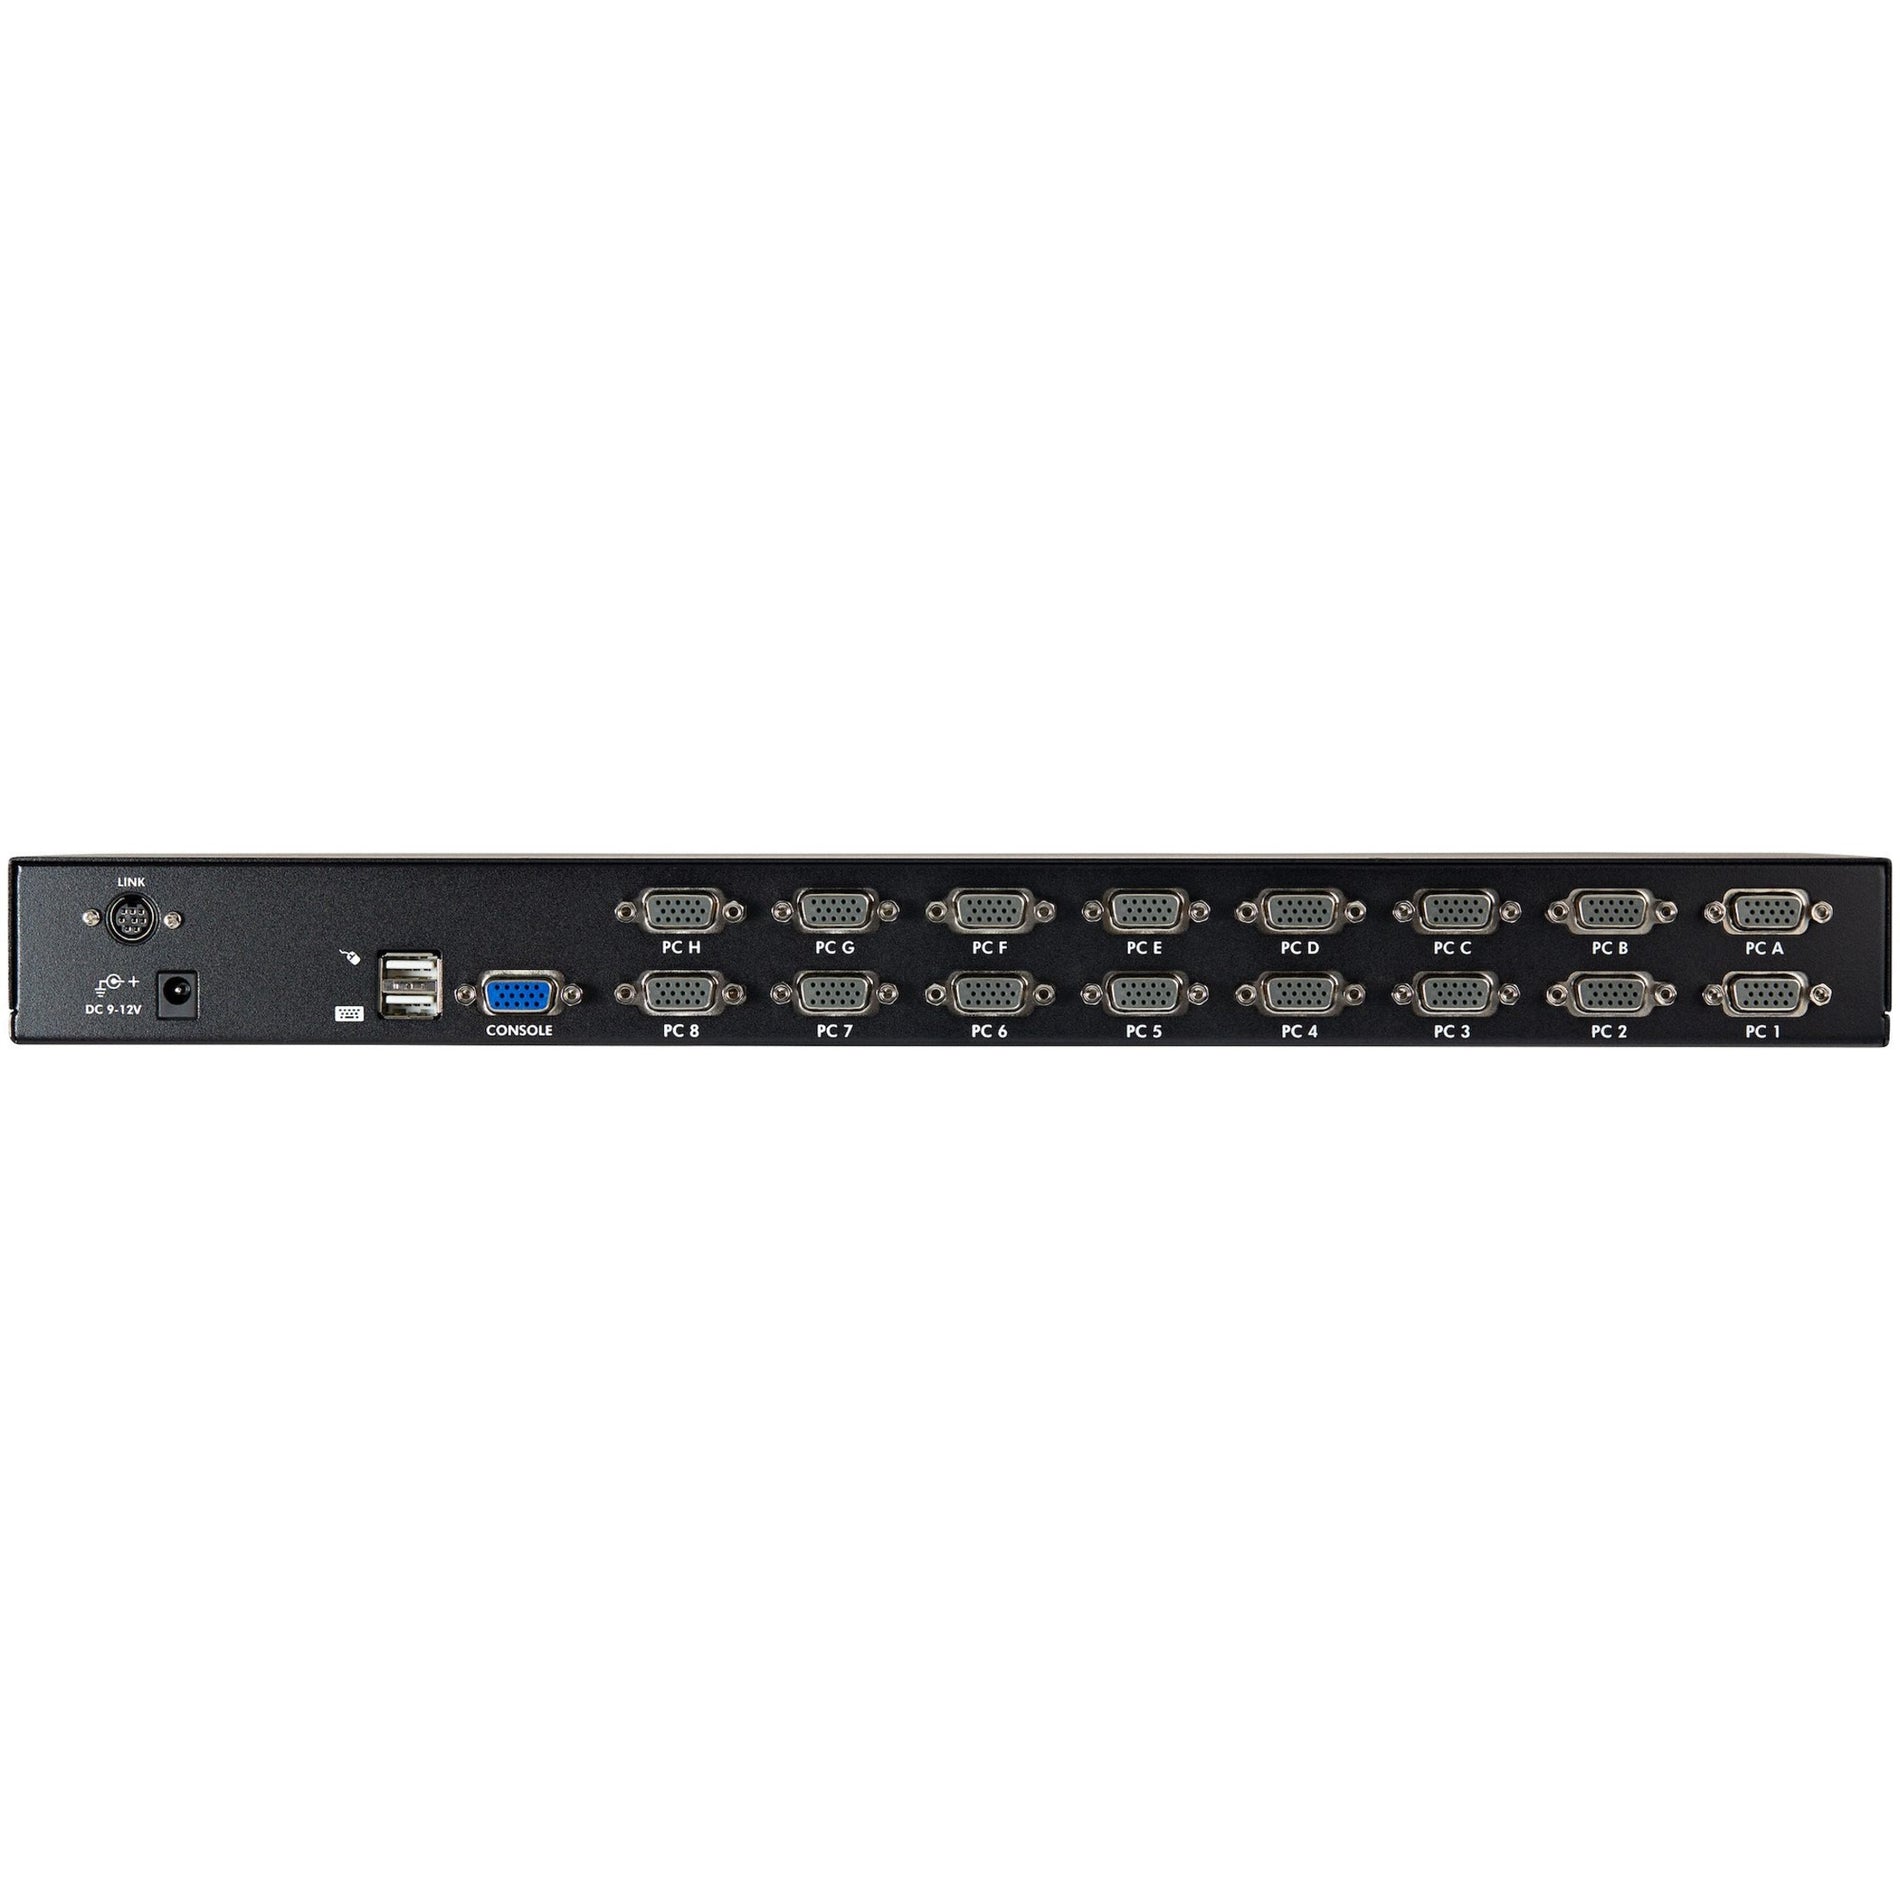 スタートレック・ドットコム SV1631DUSBUK 16 ポート 1U ラックマウント USB KVM スイッチキット w/ OSD & ケーブル 1920 x 1440 解像度 3 年 保証